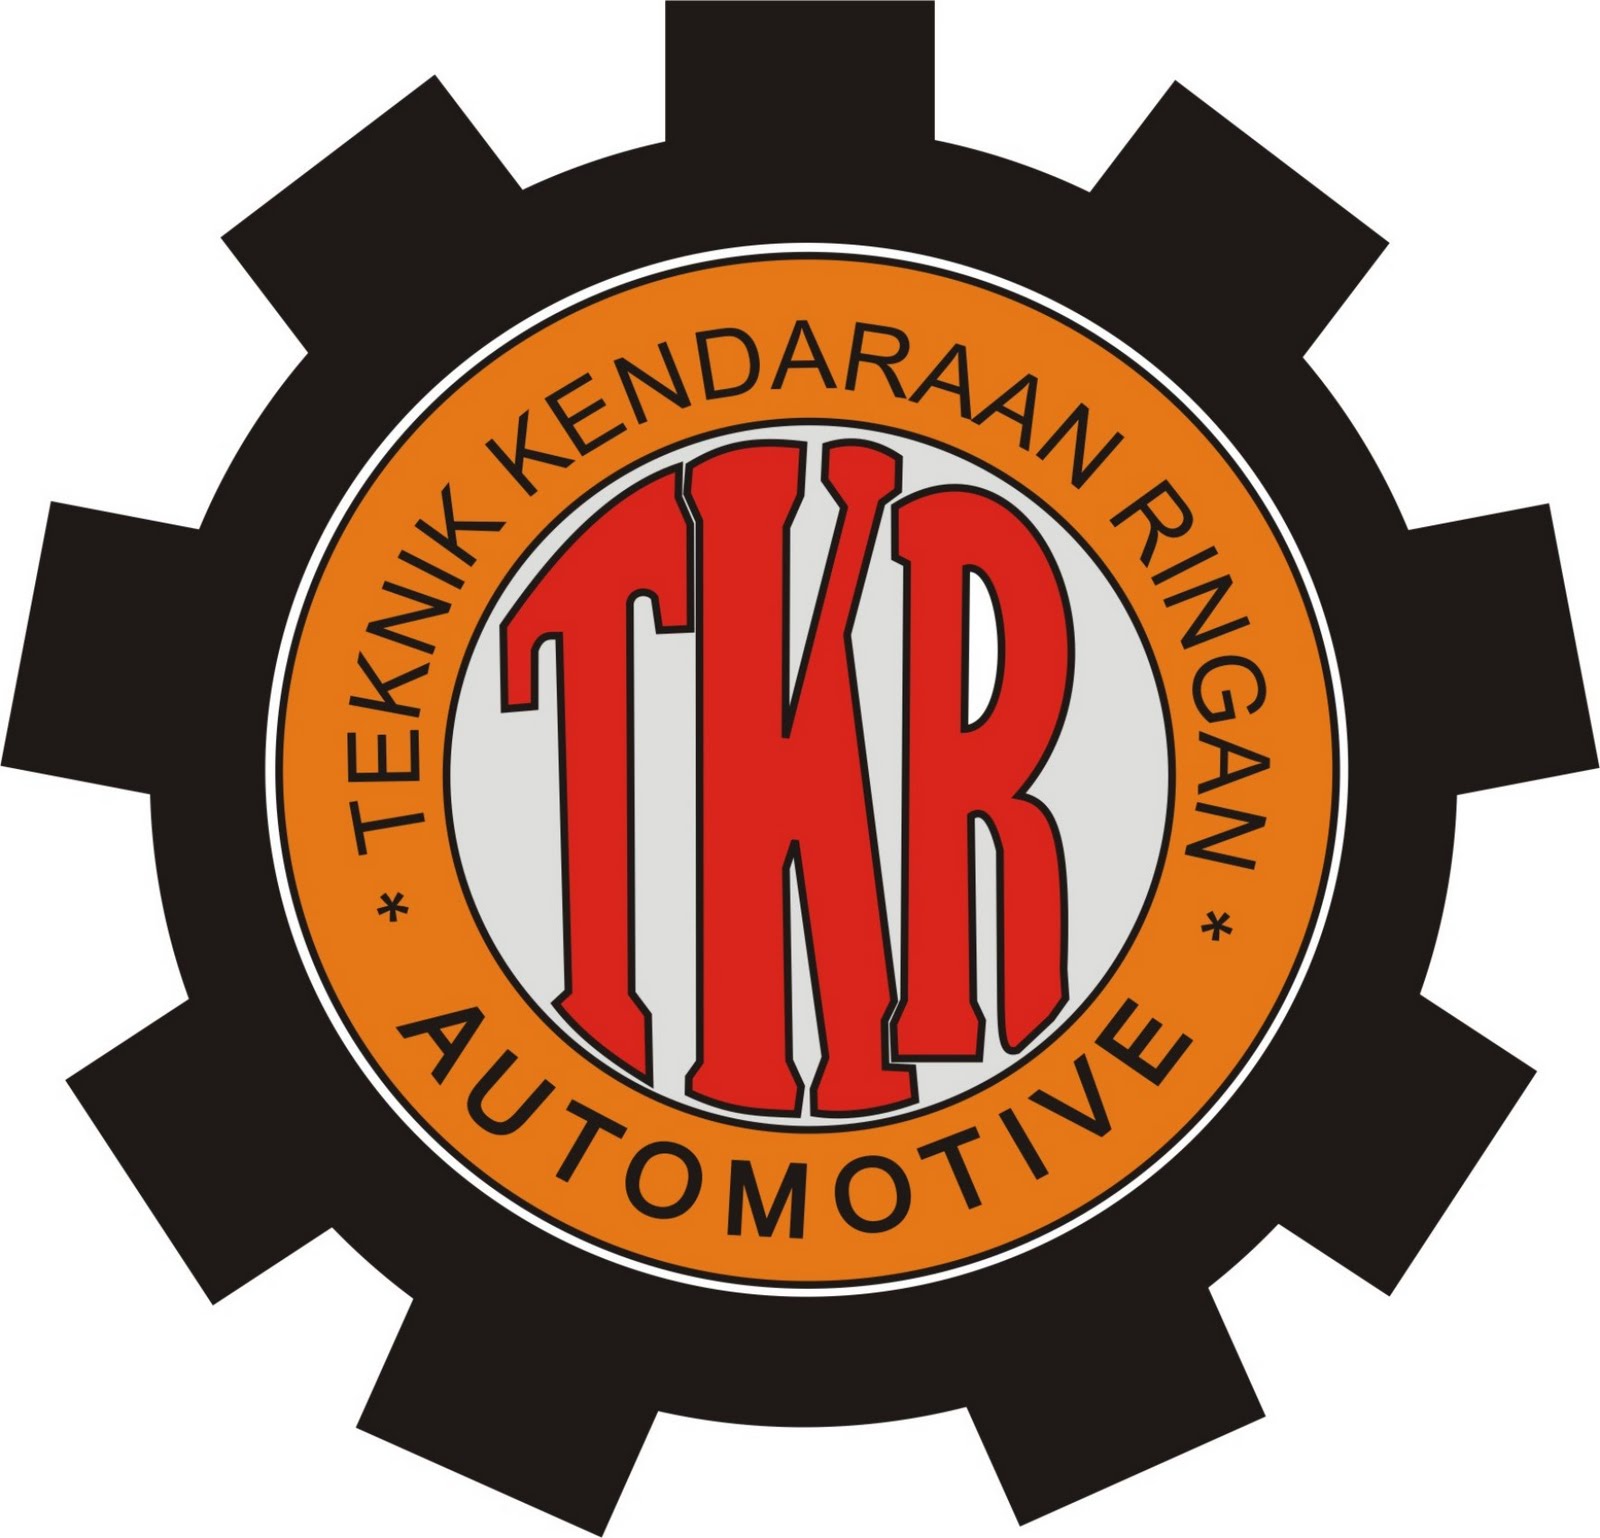  Gambar Logo Otomotif  Tkr Keren